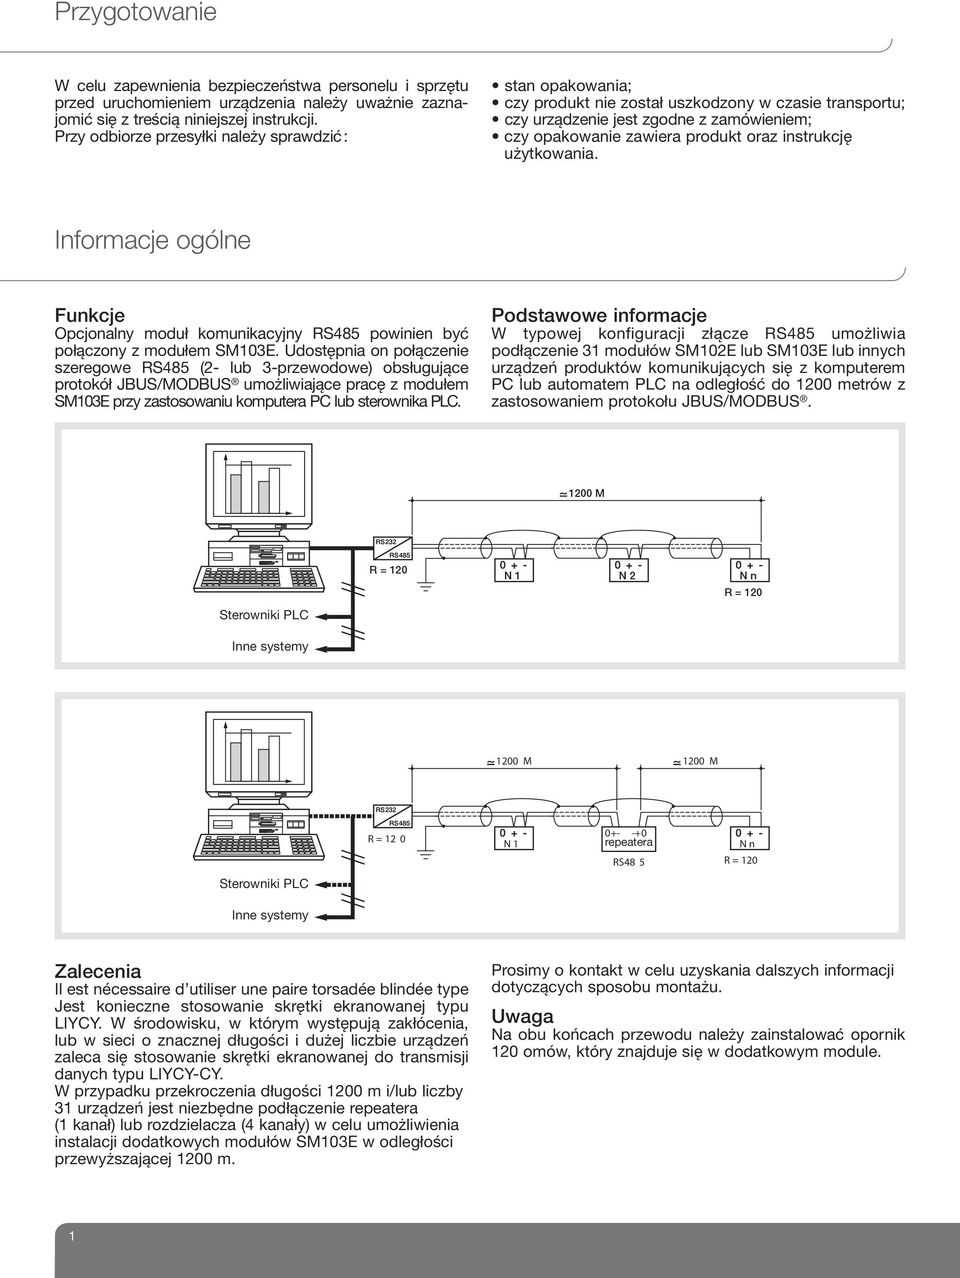 instrukcję użytkowania. Informacje ogólne Funkcje Opcjonalny moduł komunikacyjny RS485 powinien być połączony z modułem SM103E.